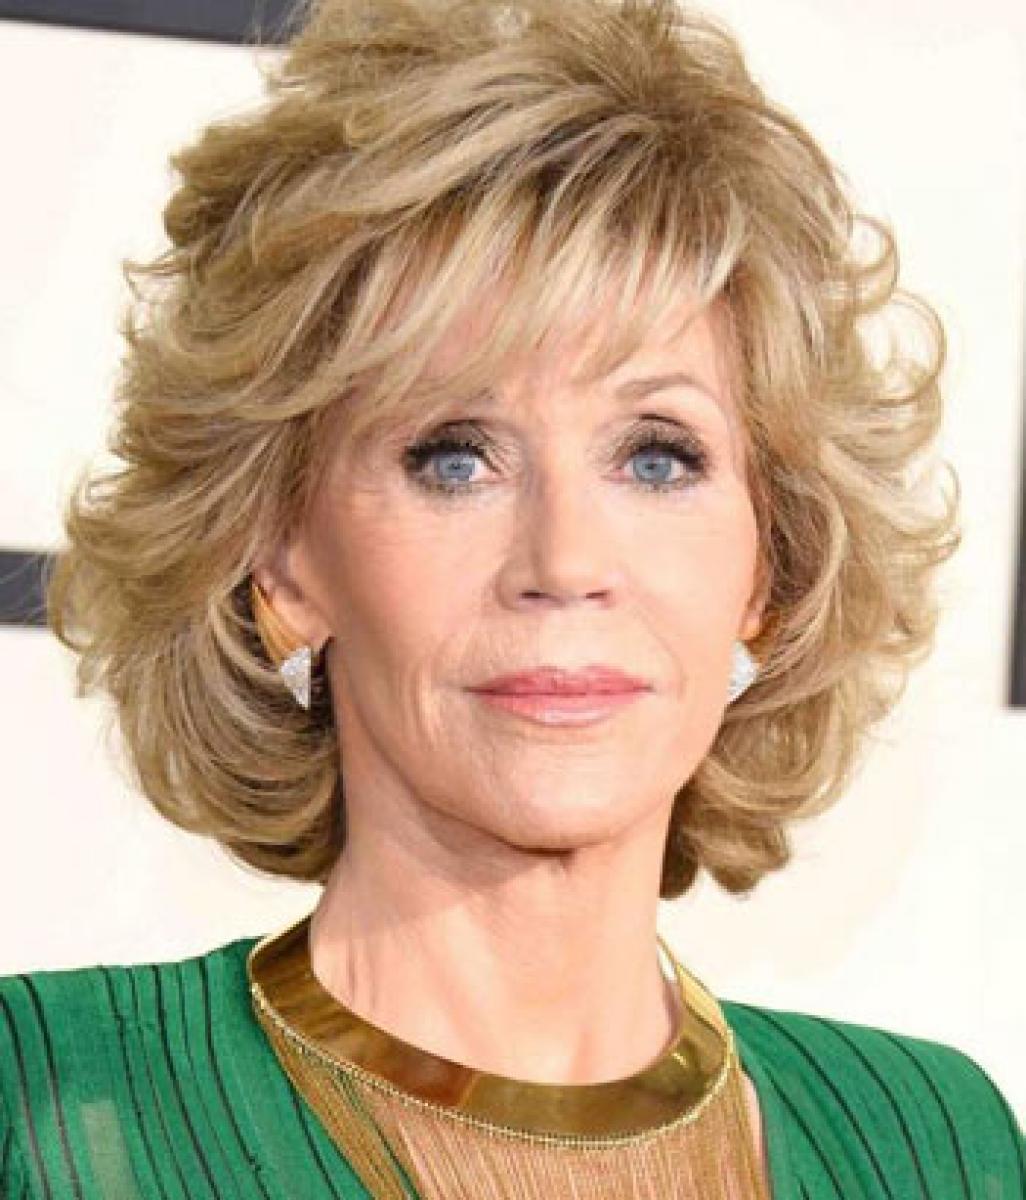 Jane Fonda speaks out on gender equality